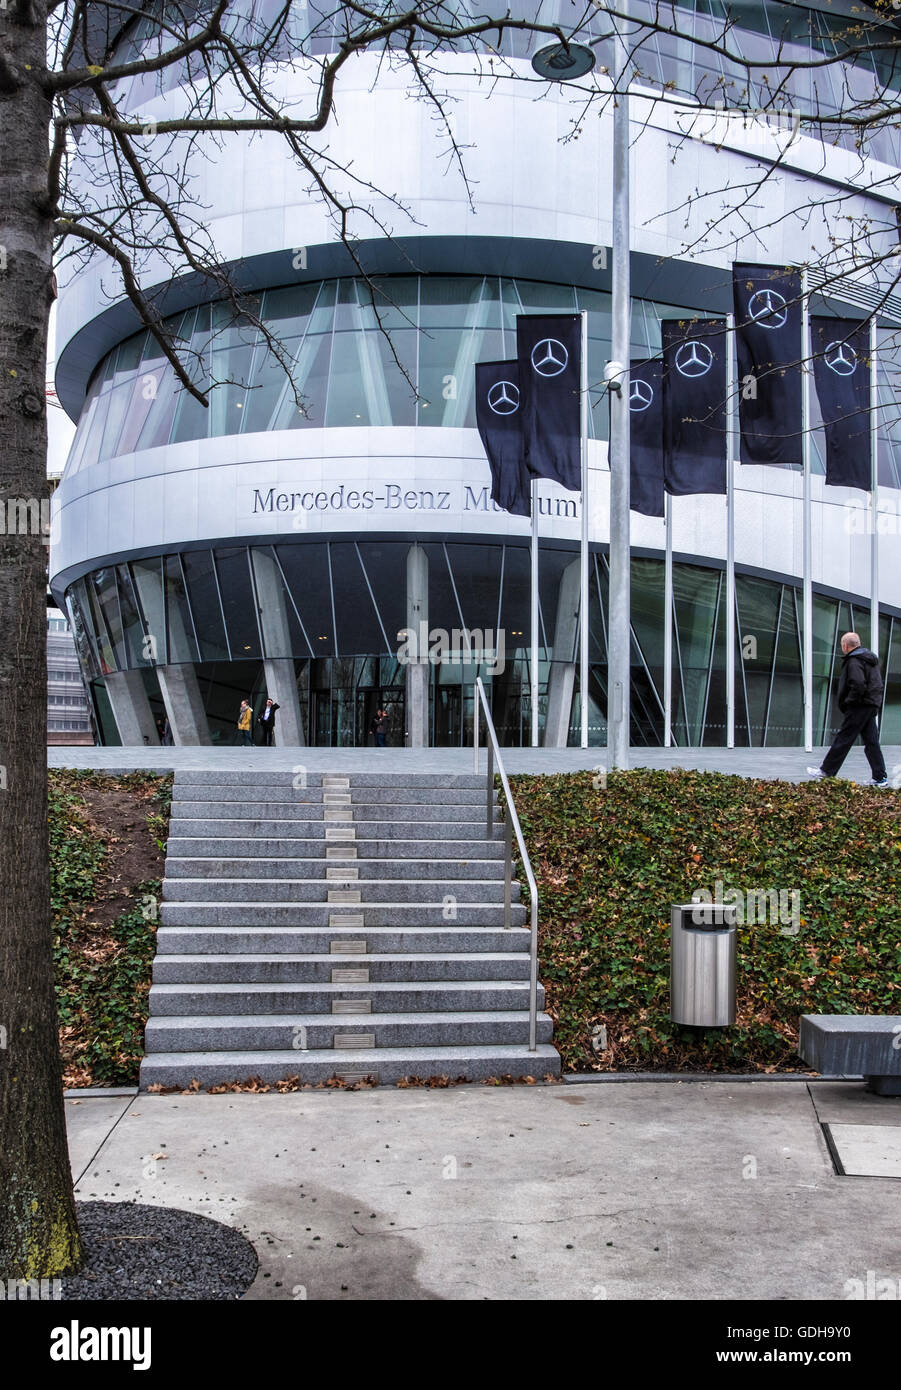 Mercedes-Benz Museum, Stuttgart, Deutschland. Moderne Aluminium-Glas-Gebäude  außen mit schwarzen Fahnen mit logos Stockfotografie - Alamy